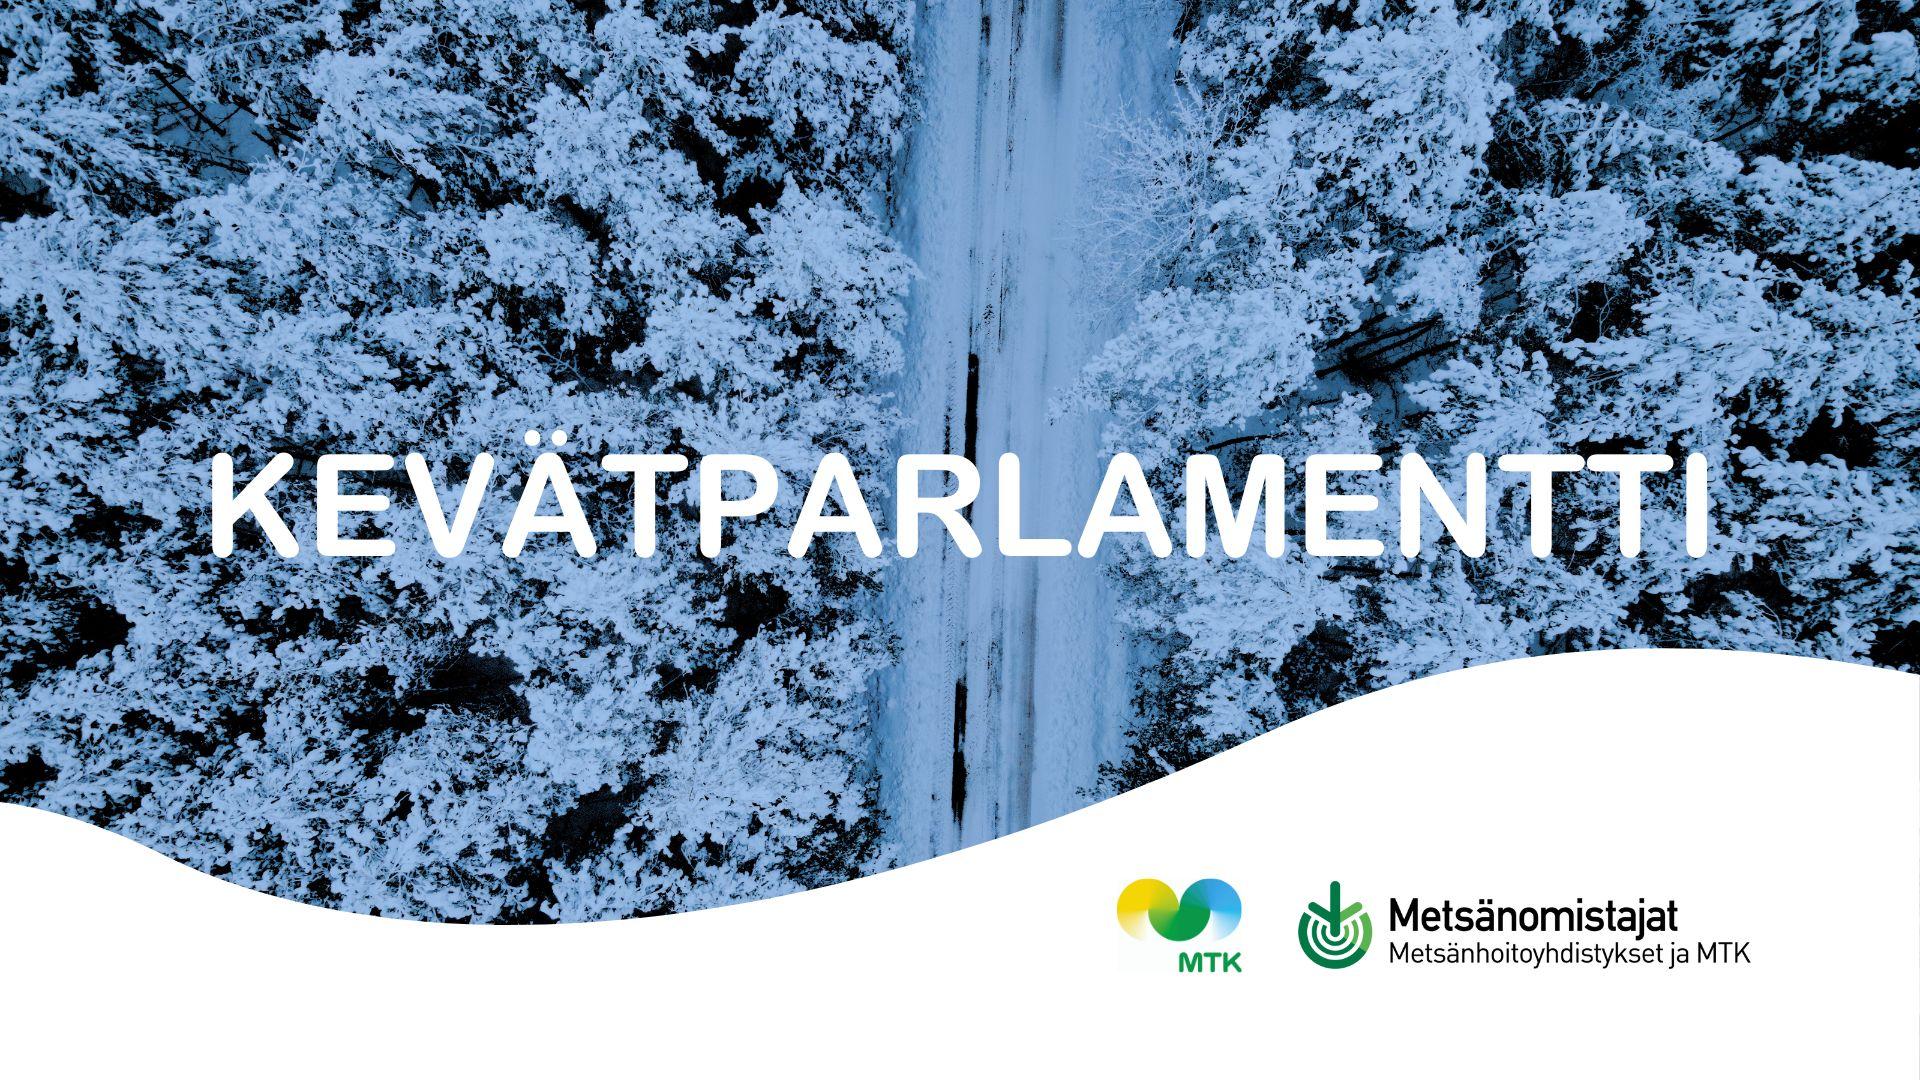 Kevätparlamentti on maaseutunuorten valiokuntien vuosittainen kokoontuminen - seuraavan kerran Keski-Suomessa 5.-6.2! 